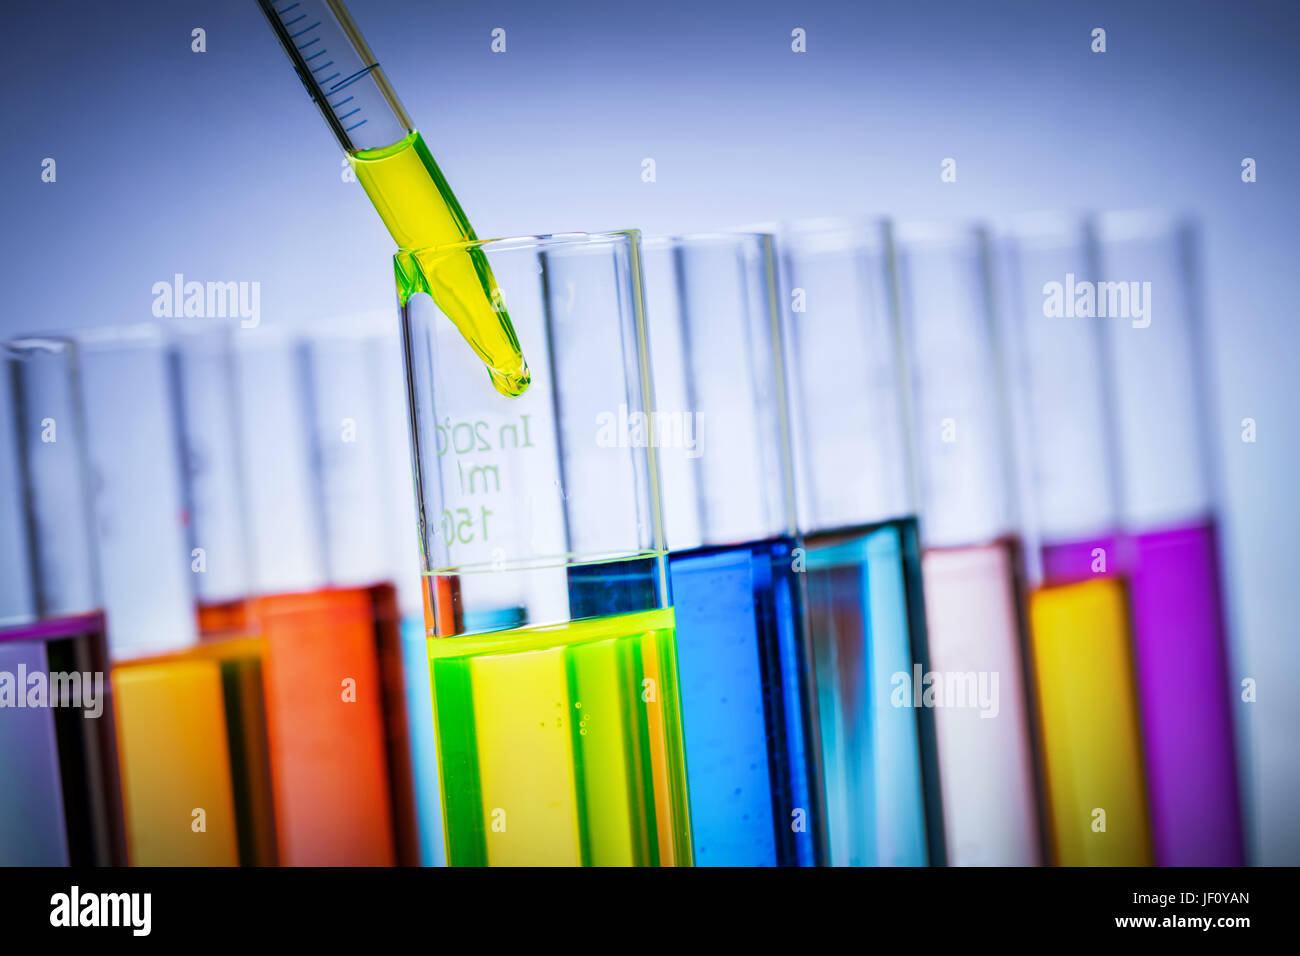 Groupe des tubes d'essai remplis de liquides colorés dans un laboratoire. Mesure de la pipette. La science de la chimie et de l'équipement. Banque D'Images